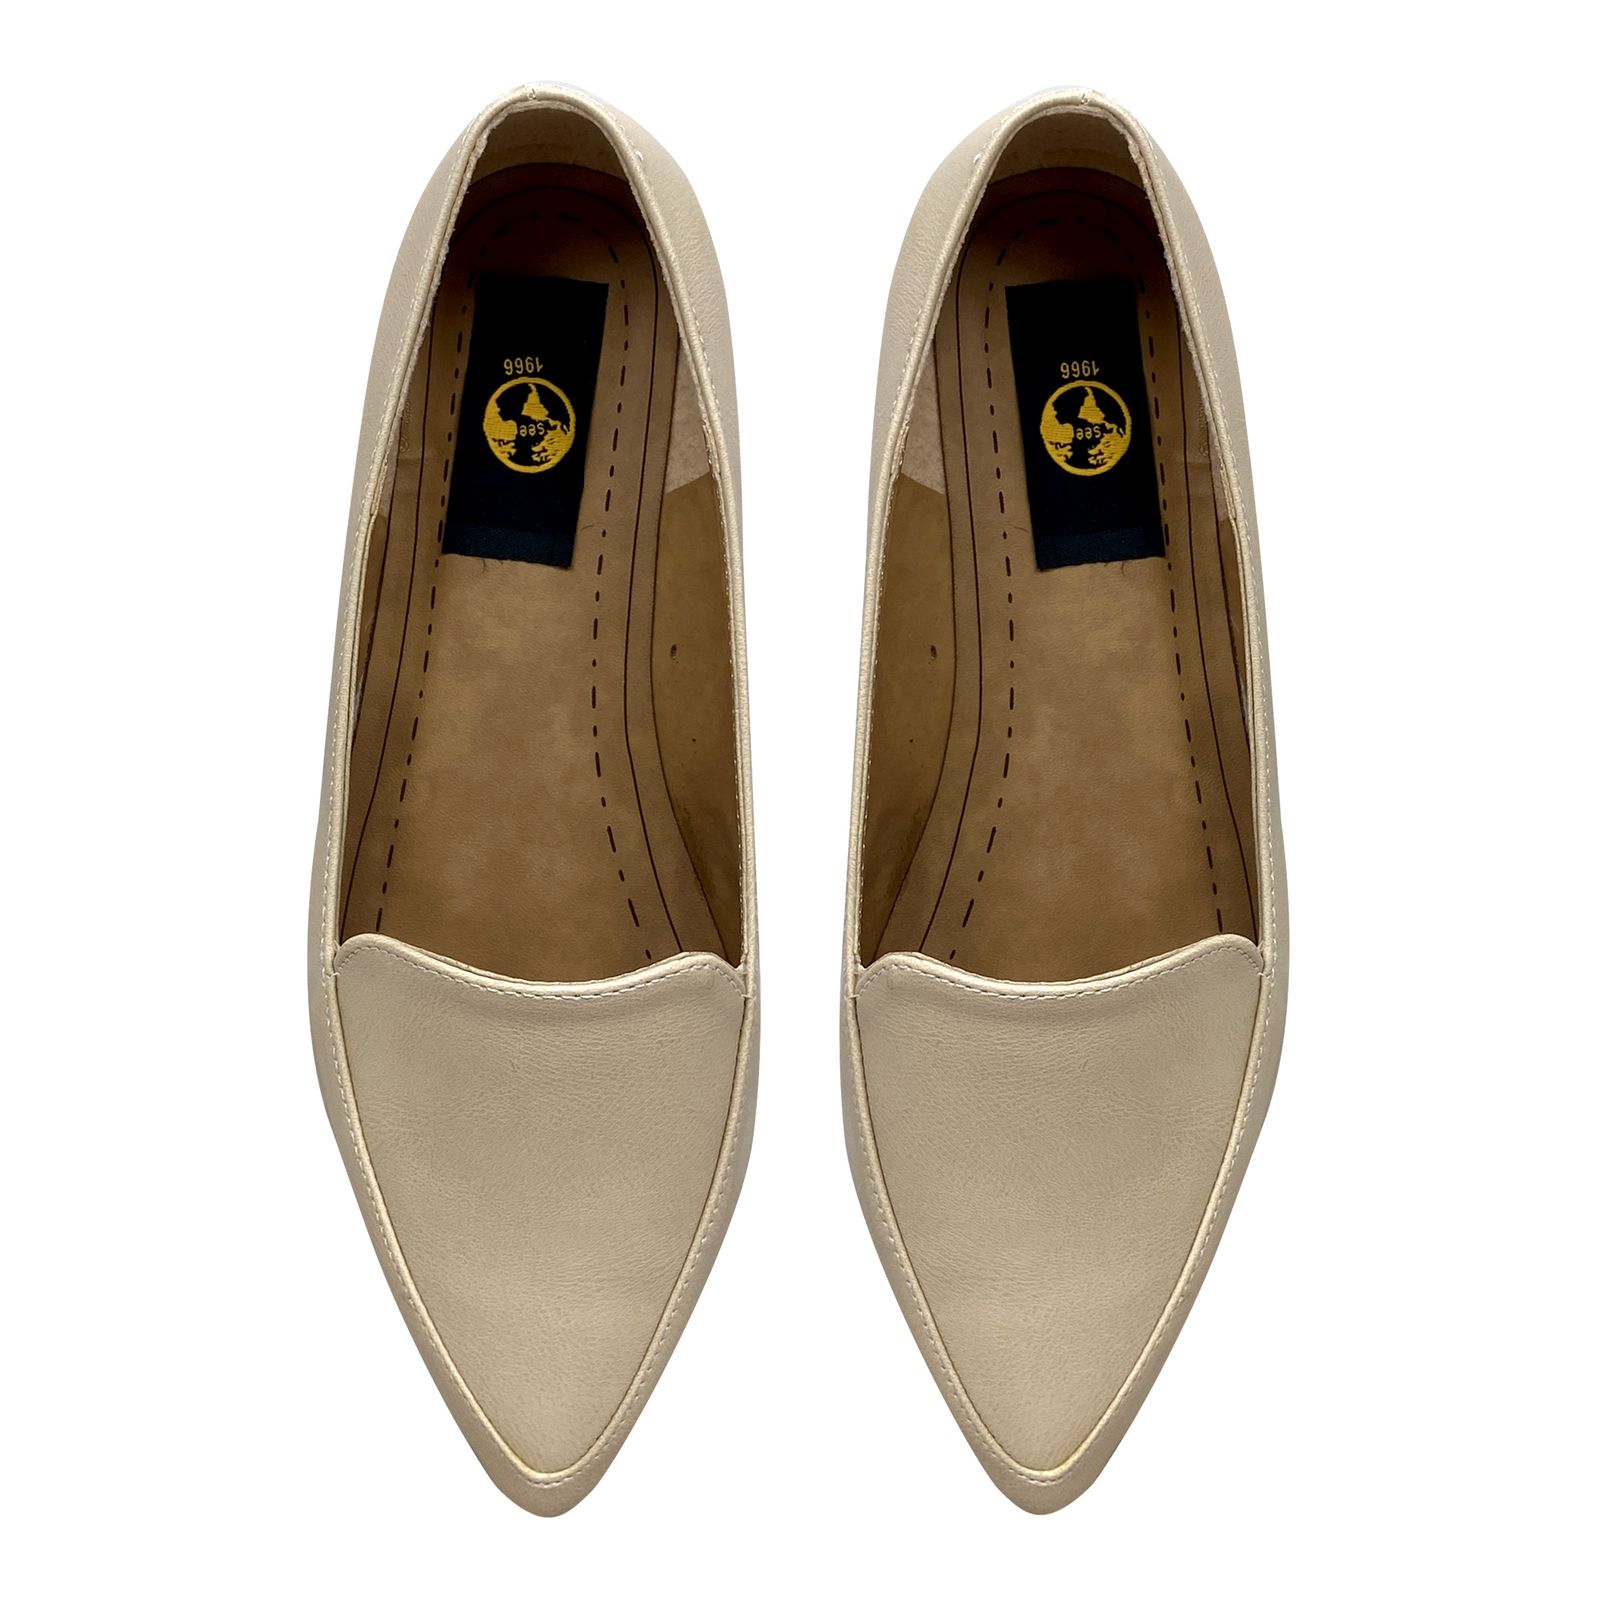 کفش زنانه سیی مدل ملکه کد 1962 -  - 3